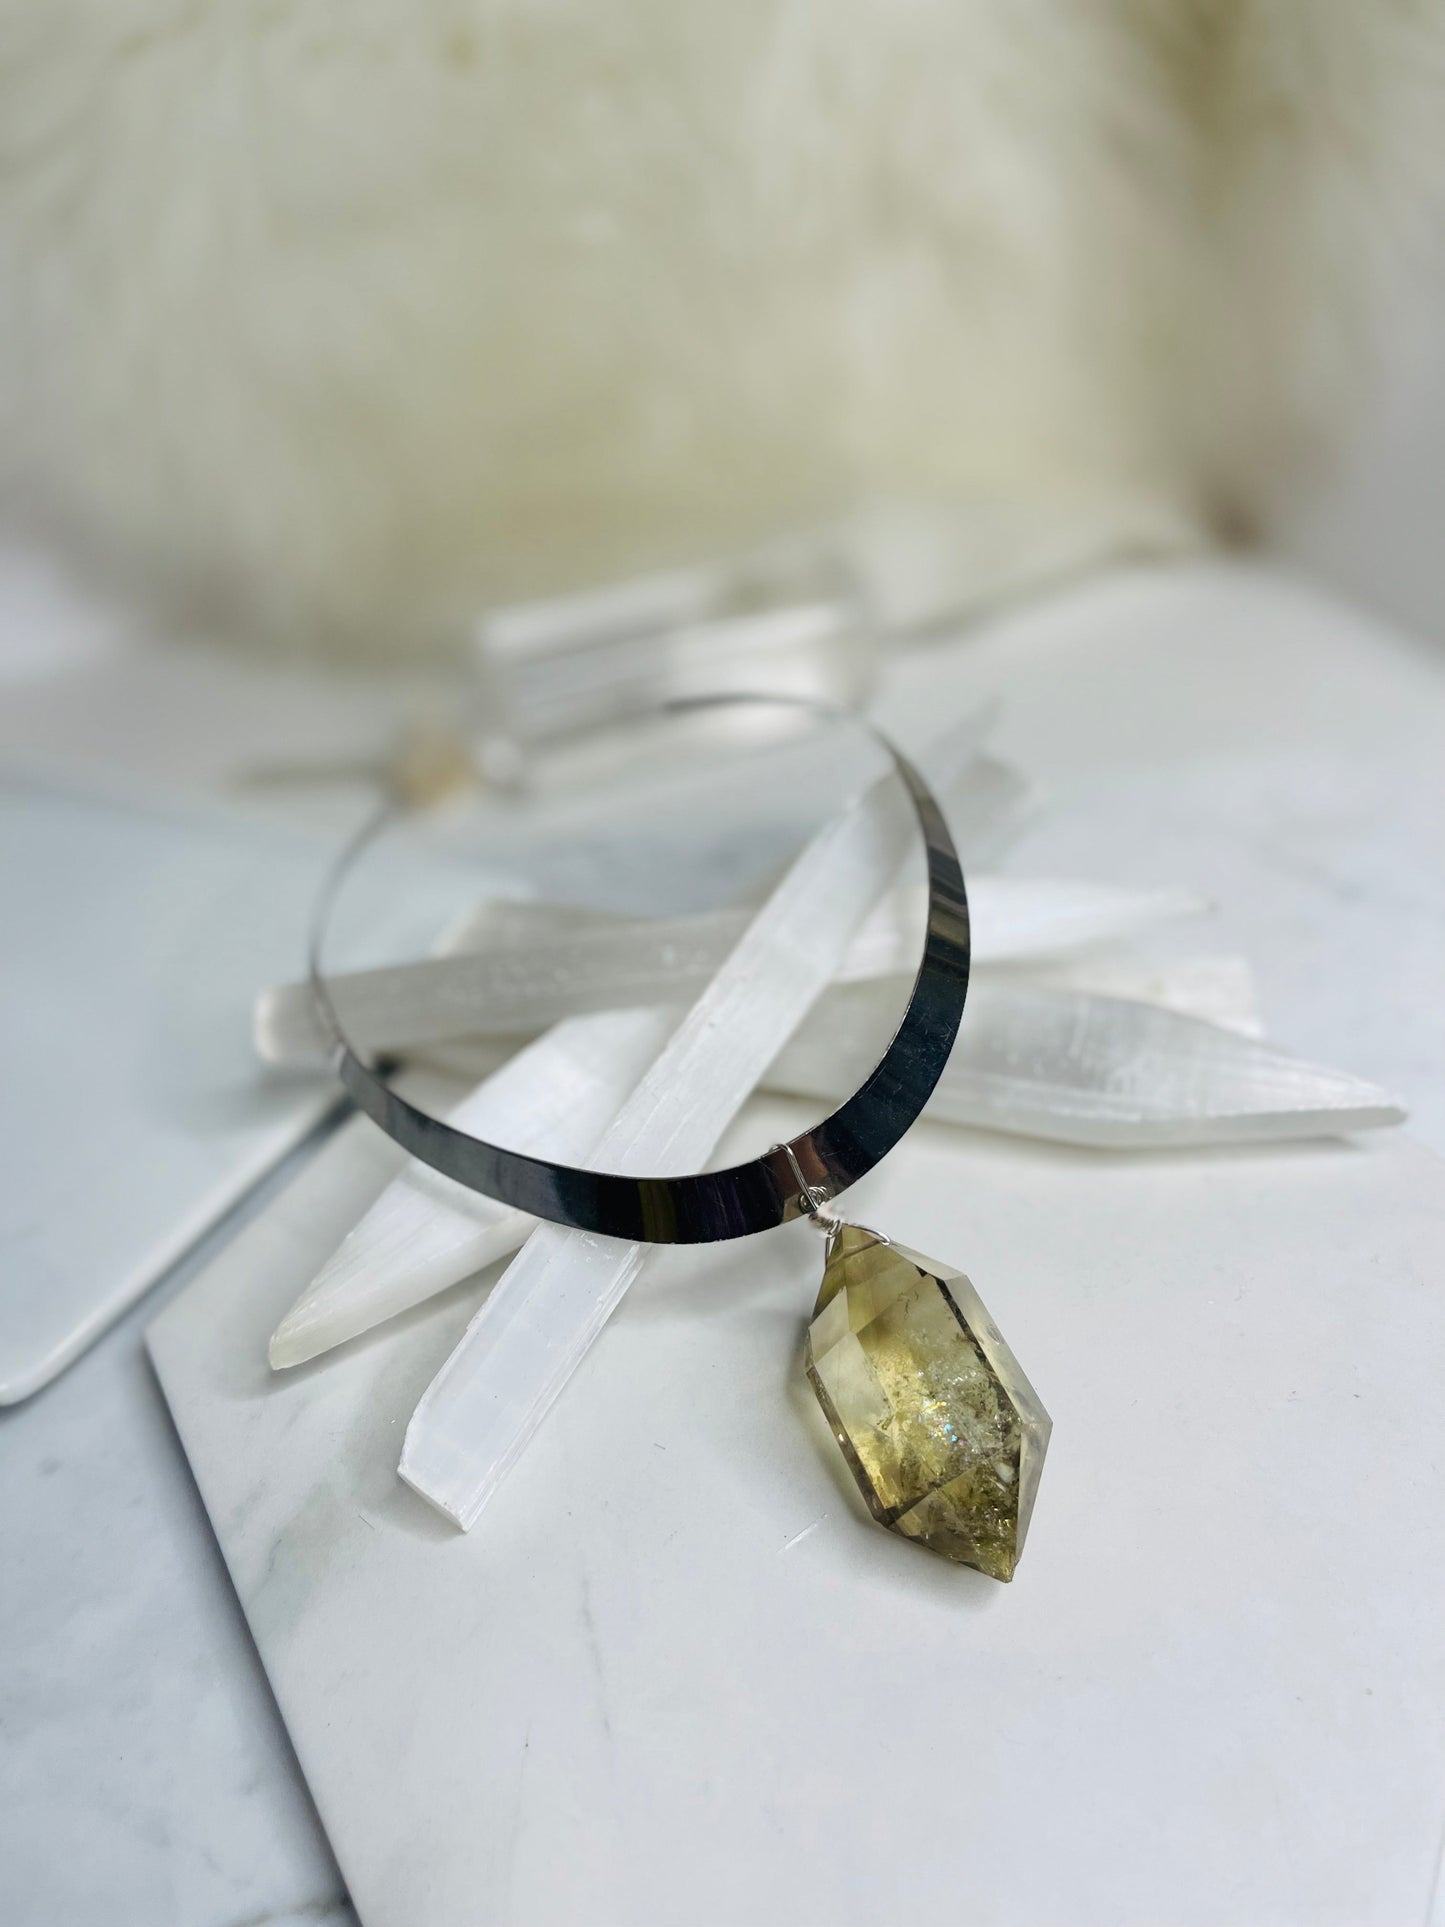 Renaissance silver- Gem Cut Citrine Soul Chain Necklace Hand wrapped on vintage chain